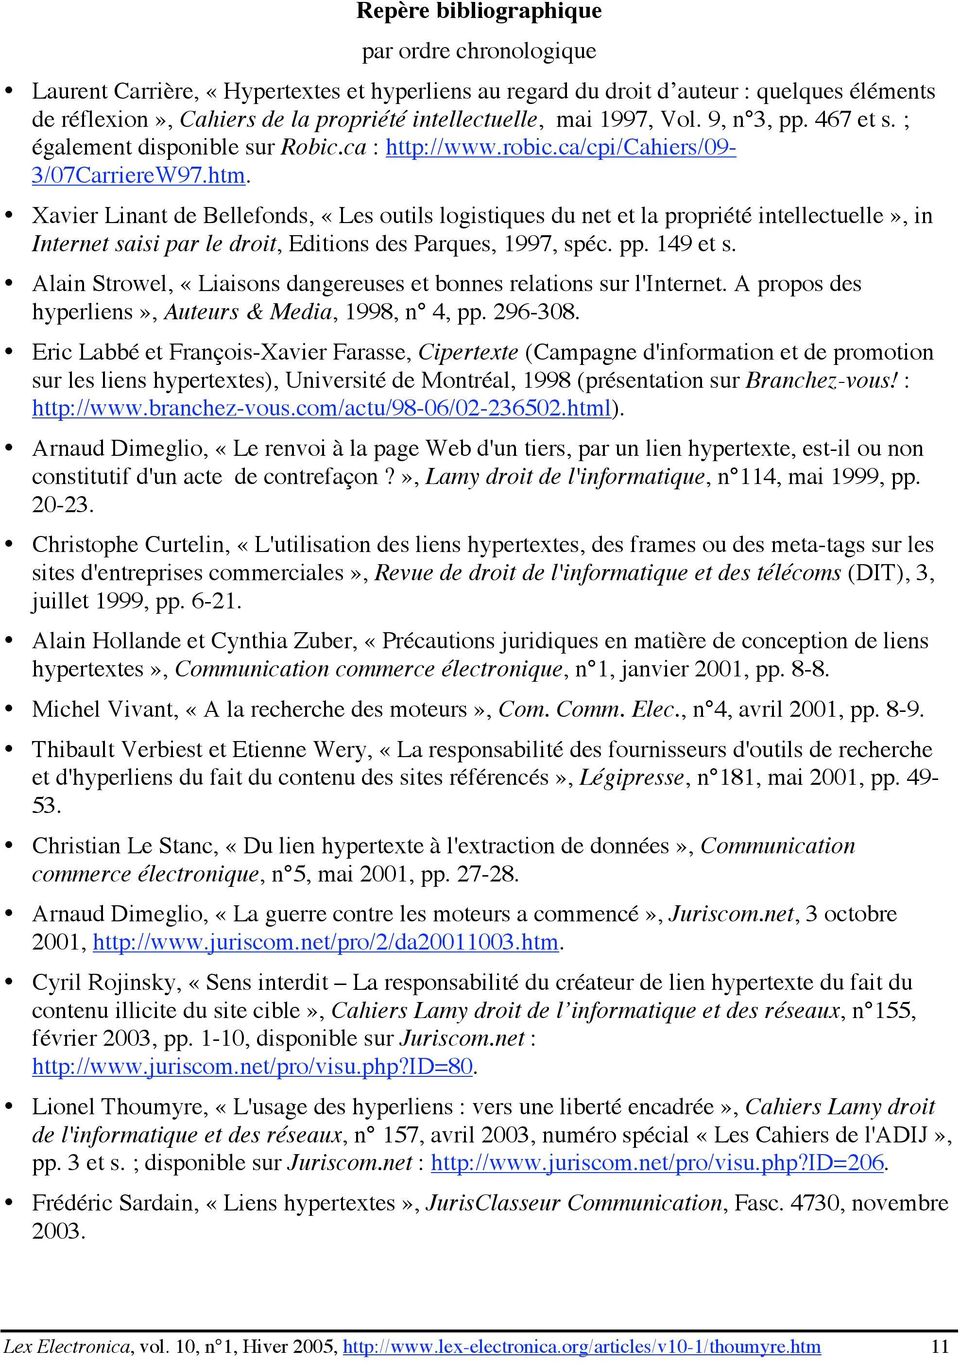 Xavier Linant de Bellefonds, «Les outils logistiques du net et la propriété intellectuelle», in Internet saisi par le droit, Editions des Parques, 1997, spéc. pp. 149 et s.